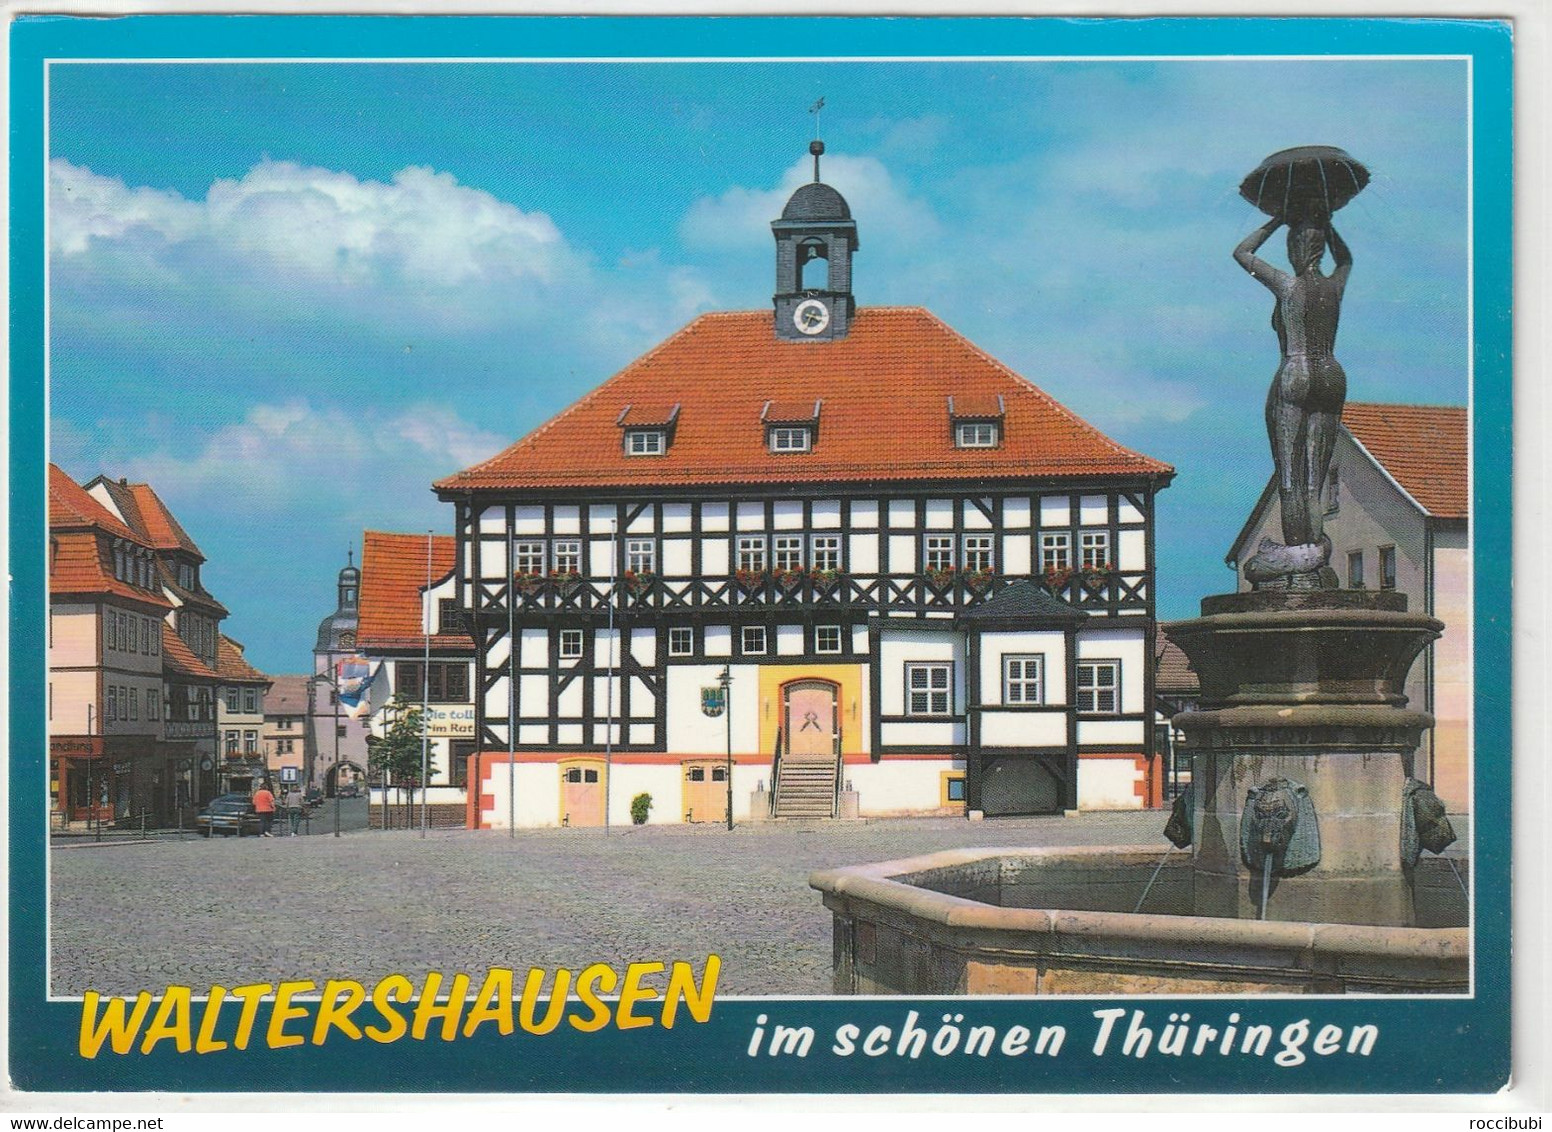 Waltershausen, Thüringen - Waltershausen